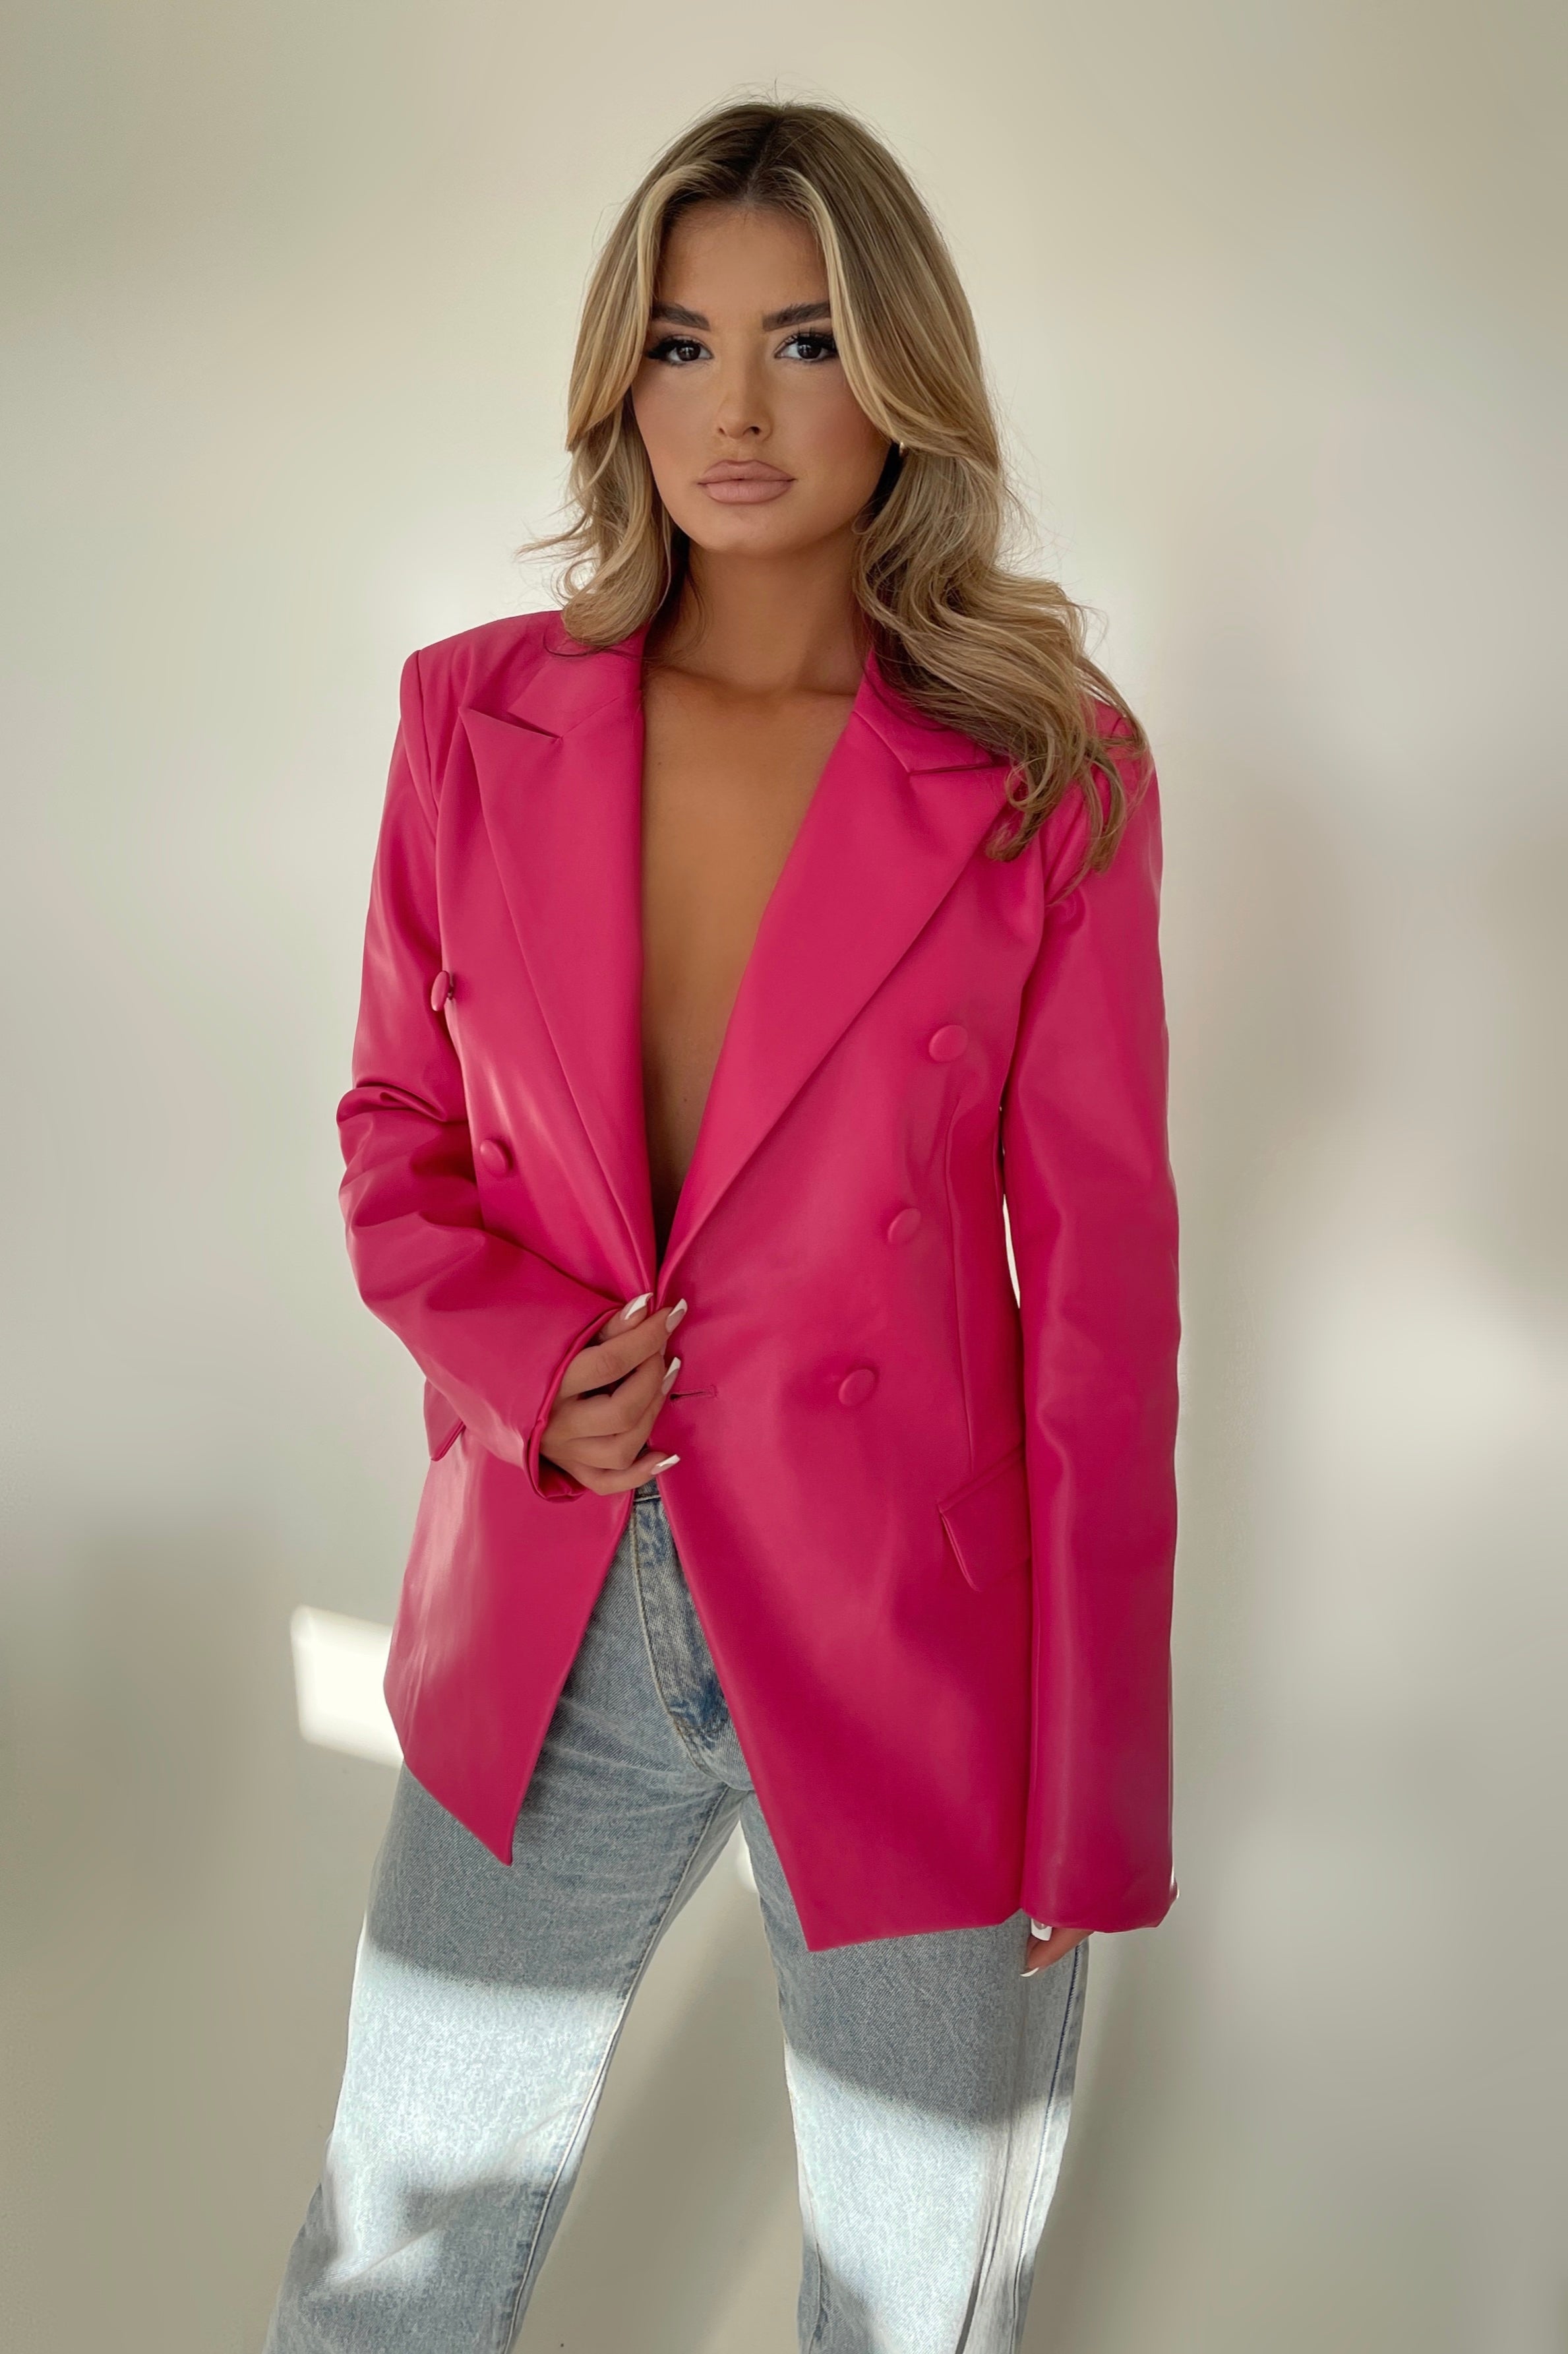 Claudina Hot Pink Blazer